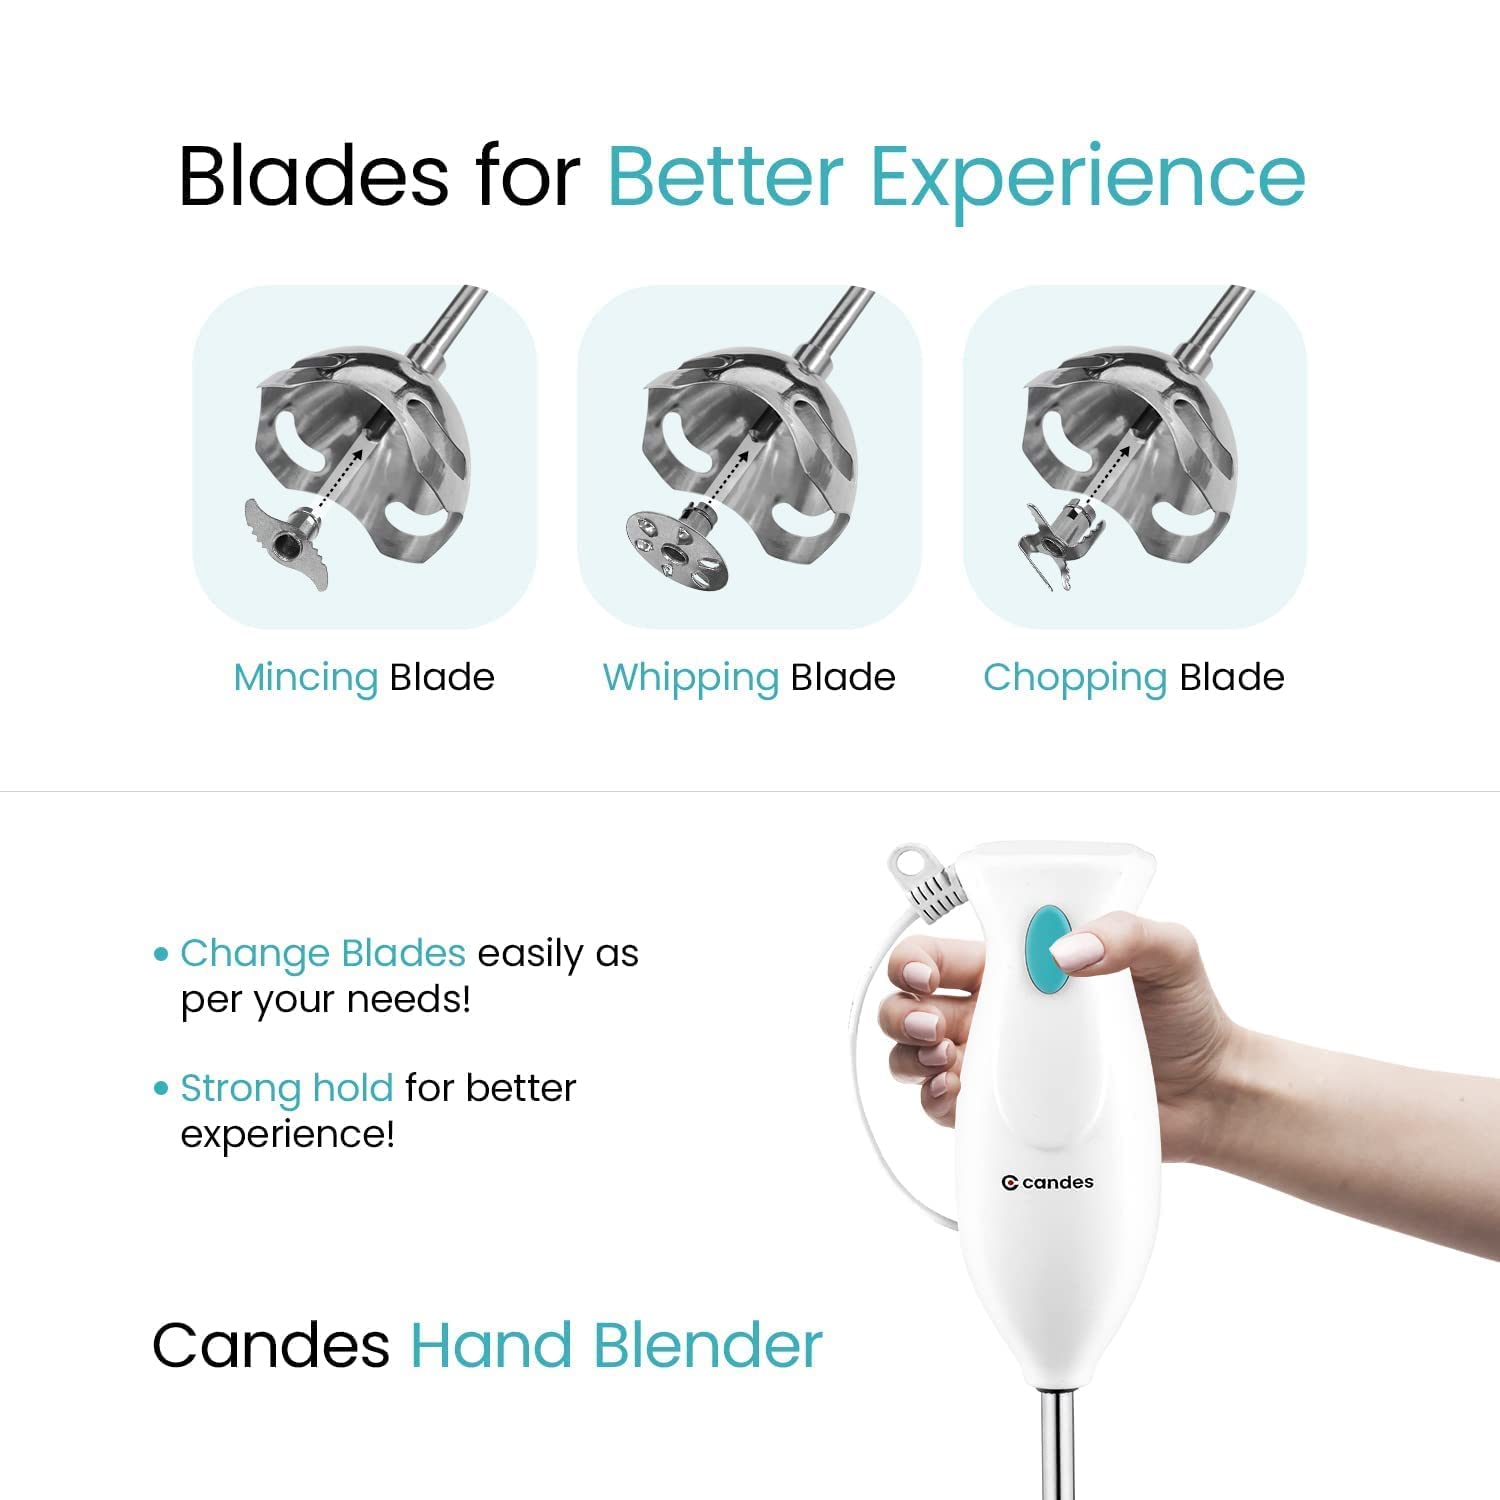 Candes Hand Blender 250 Watts, 1 Year Warranty, White - Green